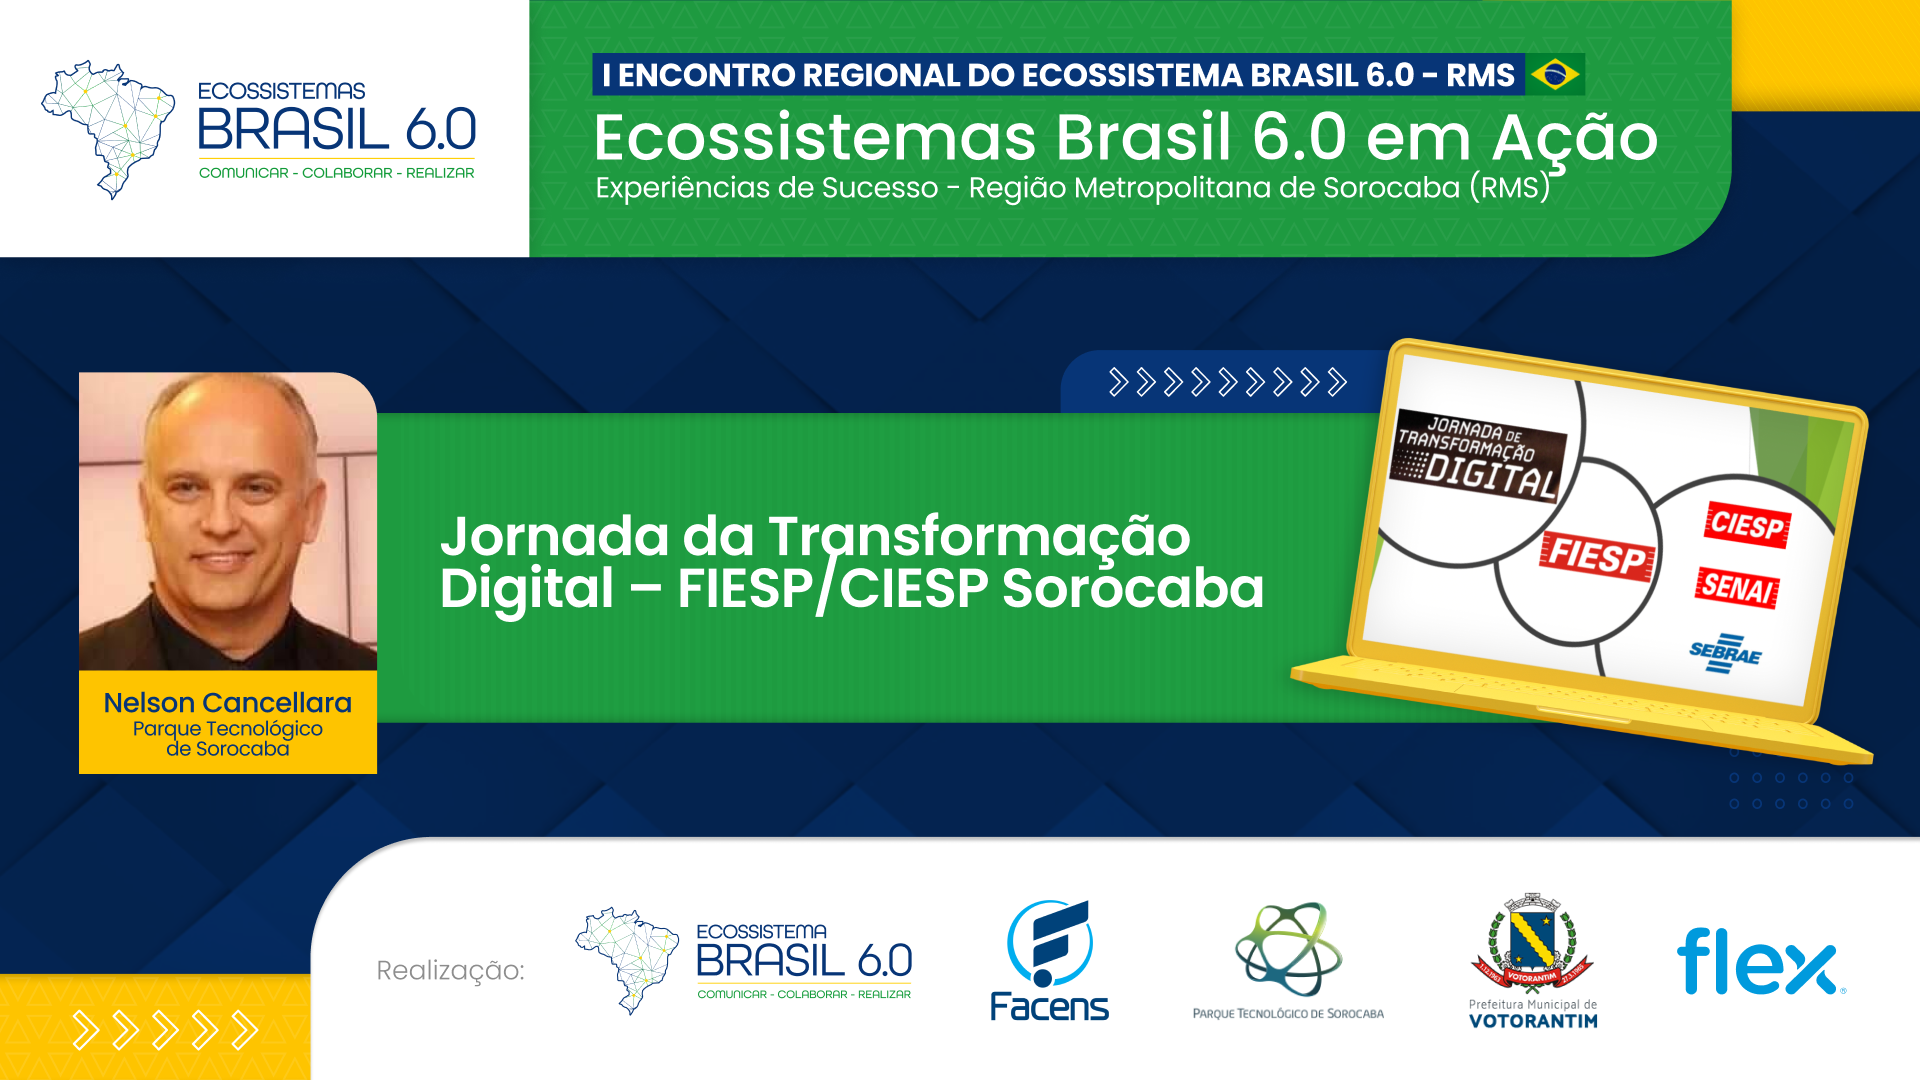 Jornada da Transformação Digital – FIESP CIESP Sorocaba